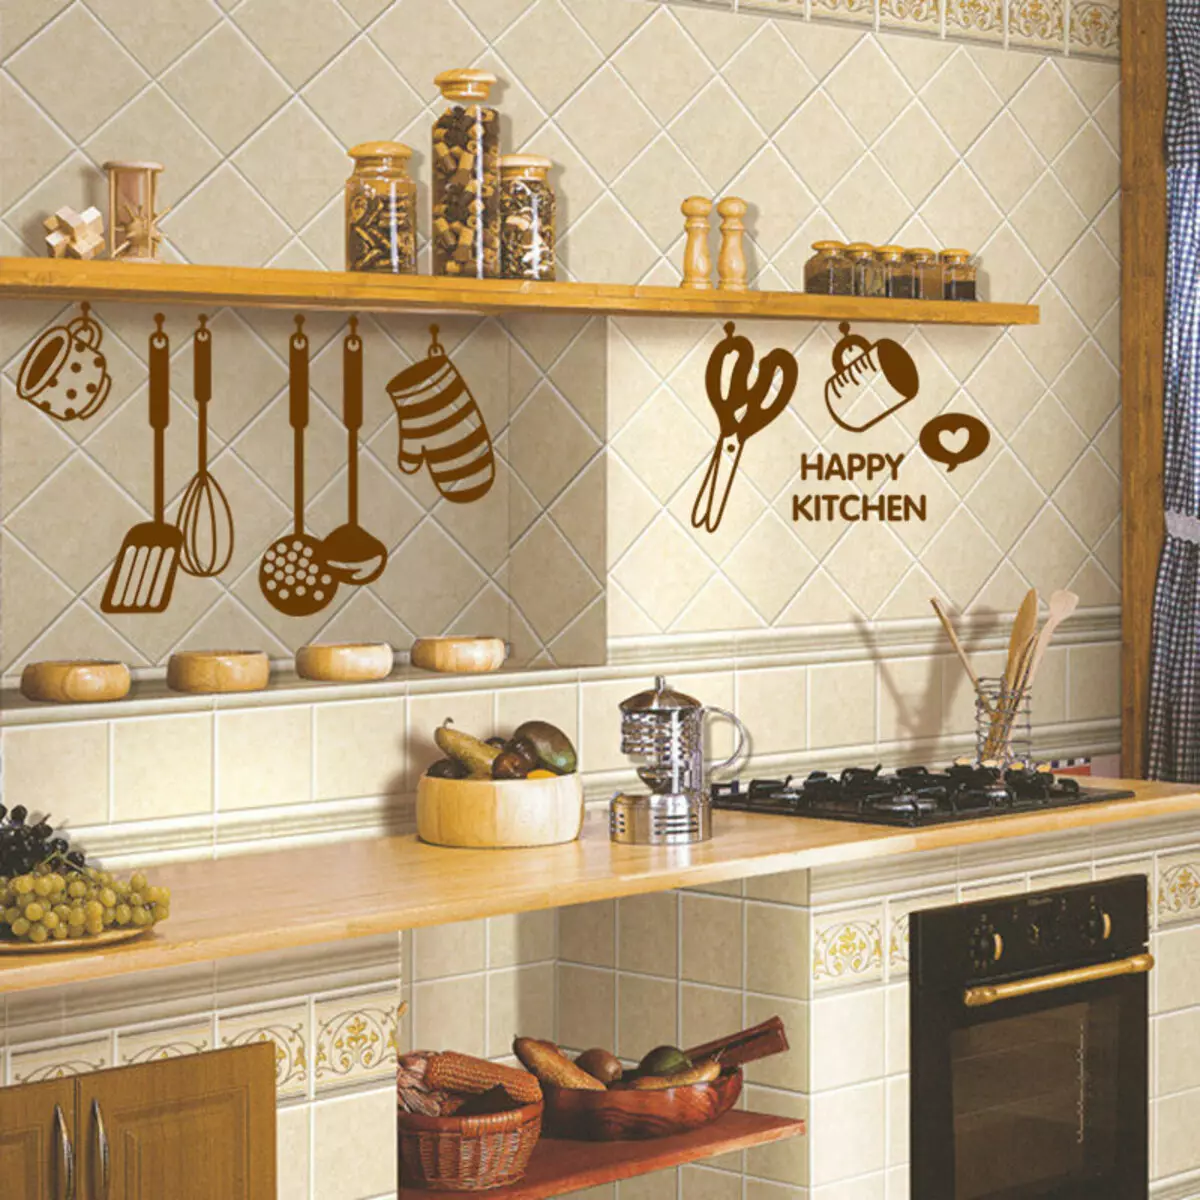 Hình nền cho nhà bếp (102 ảnh): Thiết kế hình nền nhà bếp cho tường bếp trong căn hộ, đẹp sáng, sáng và các tùy chọn hình nền khác trong nội thất 21113_46